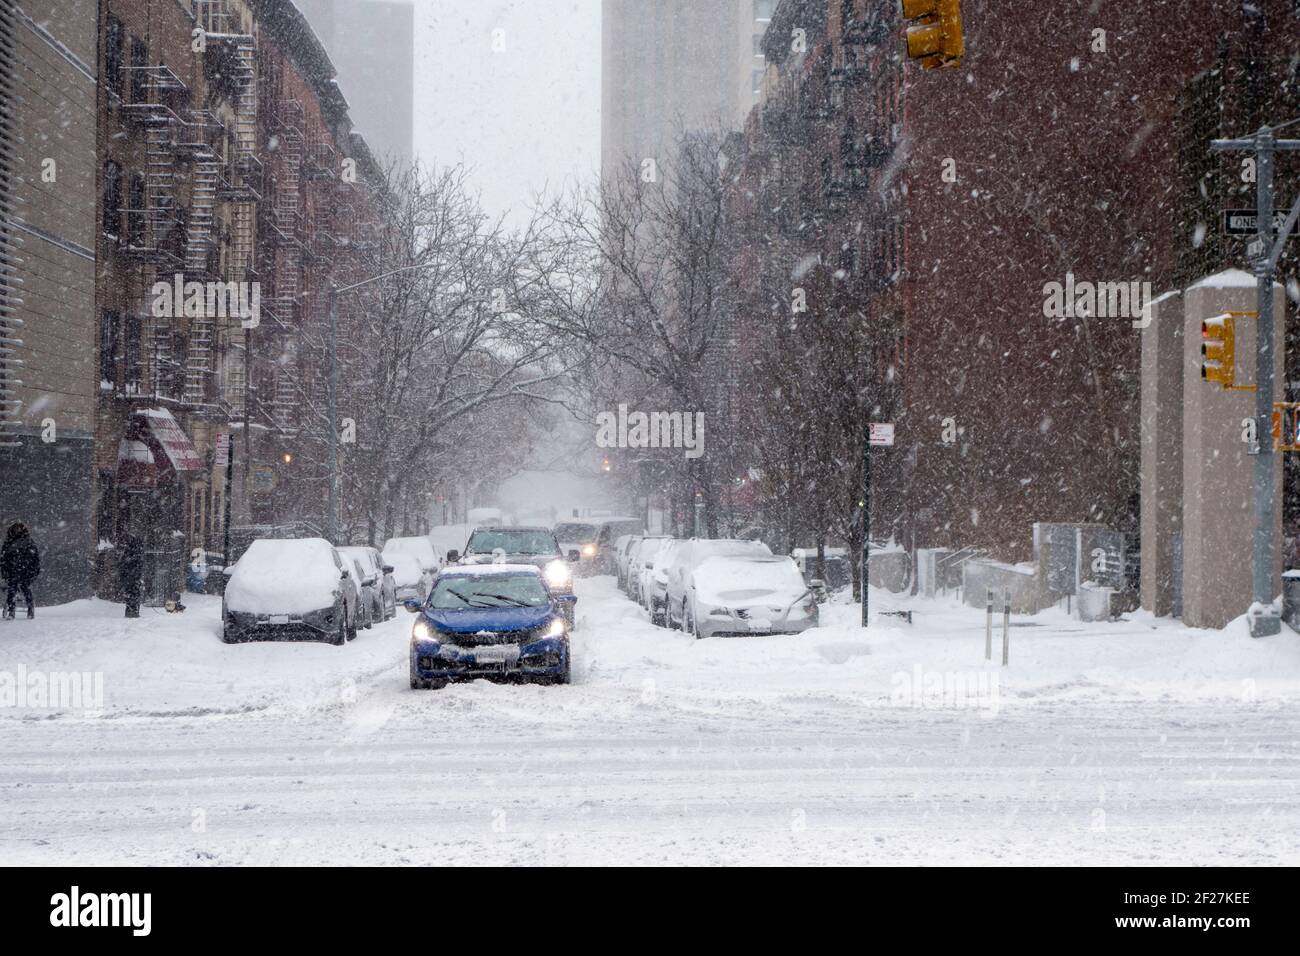 Natale Bianco inverno neve giorno nella grande mela nuovo york City manhattan edda strade e passaggi pedonali Foto Stock